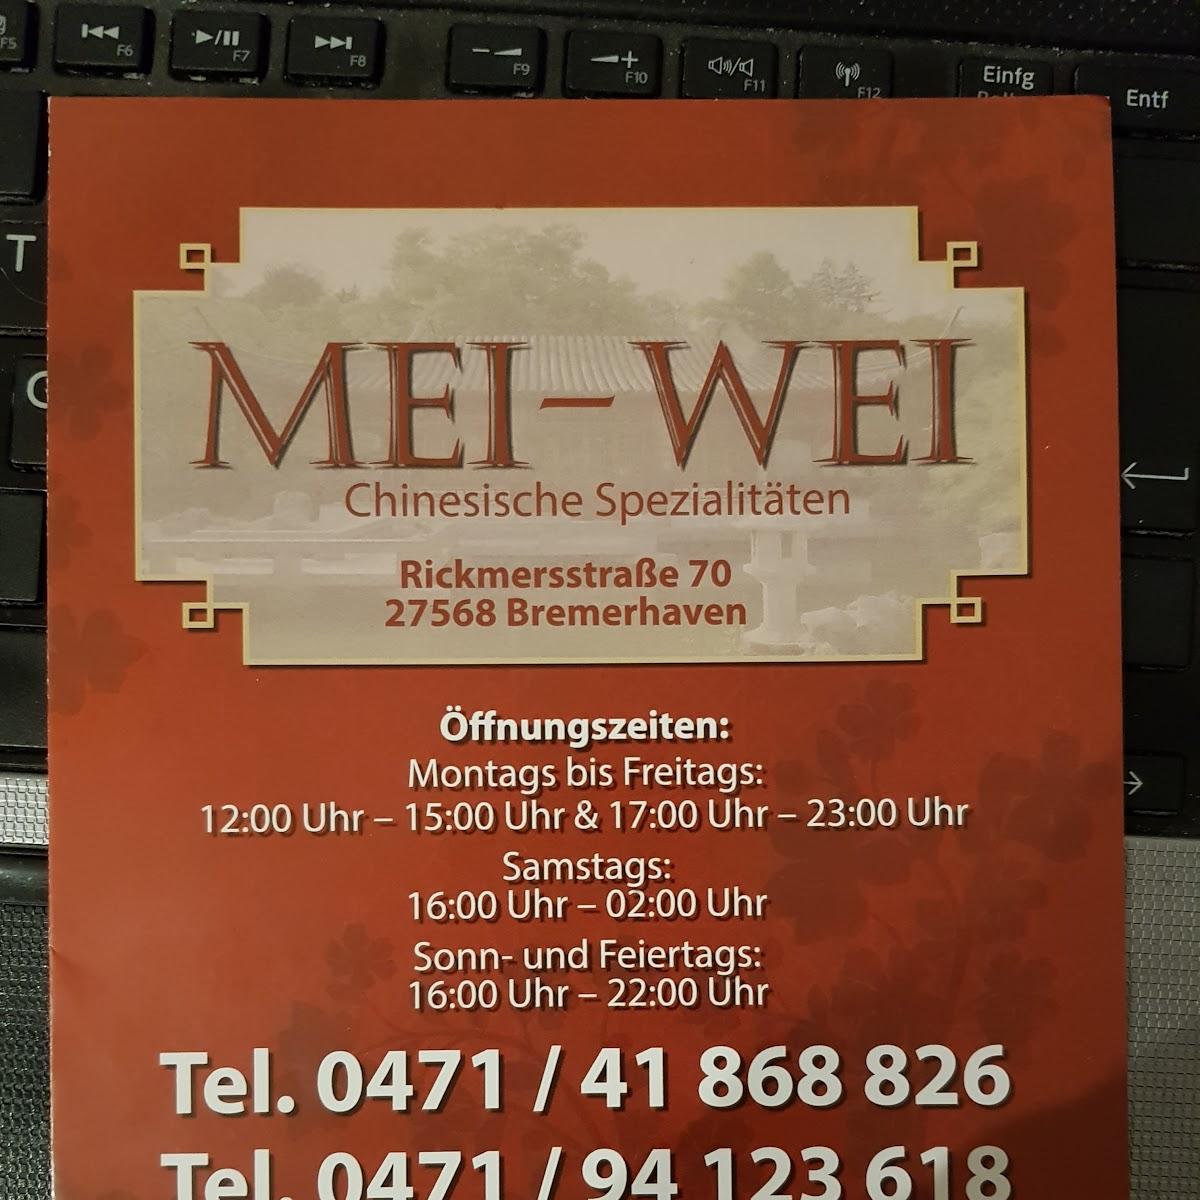 Restaurant "Mei Wei" in Bremerhaven